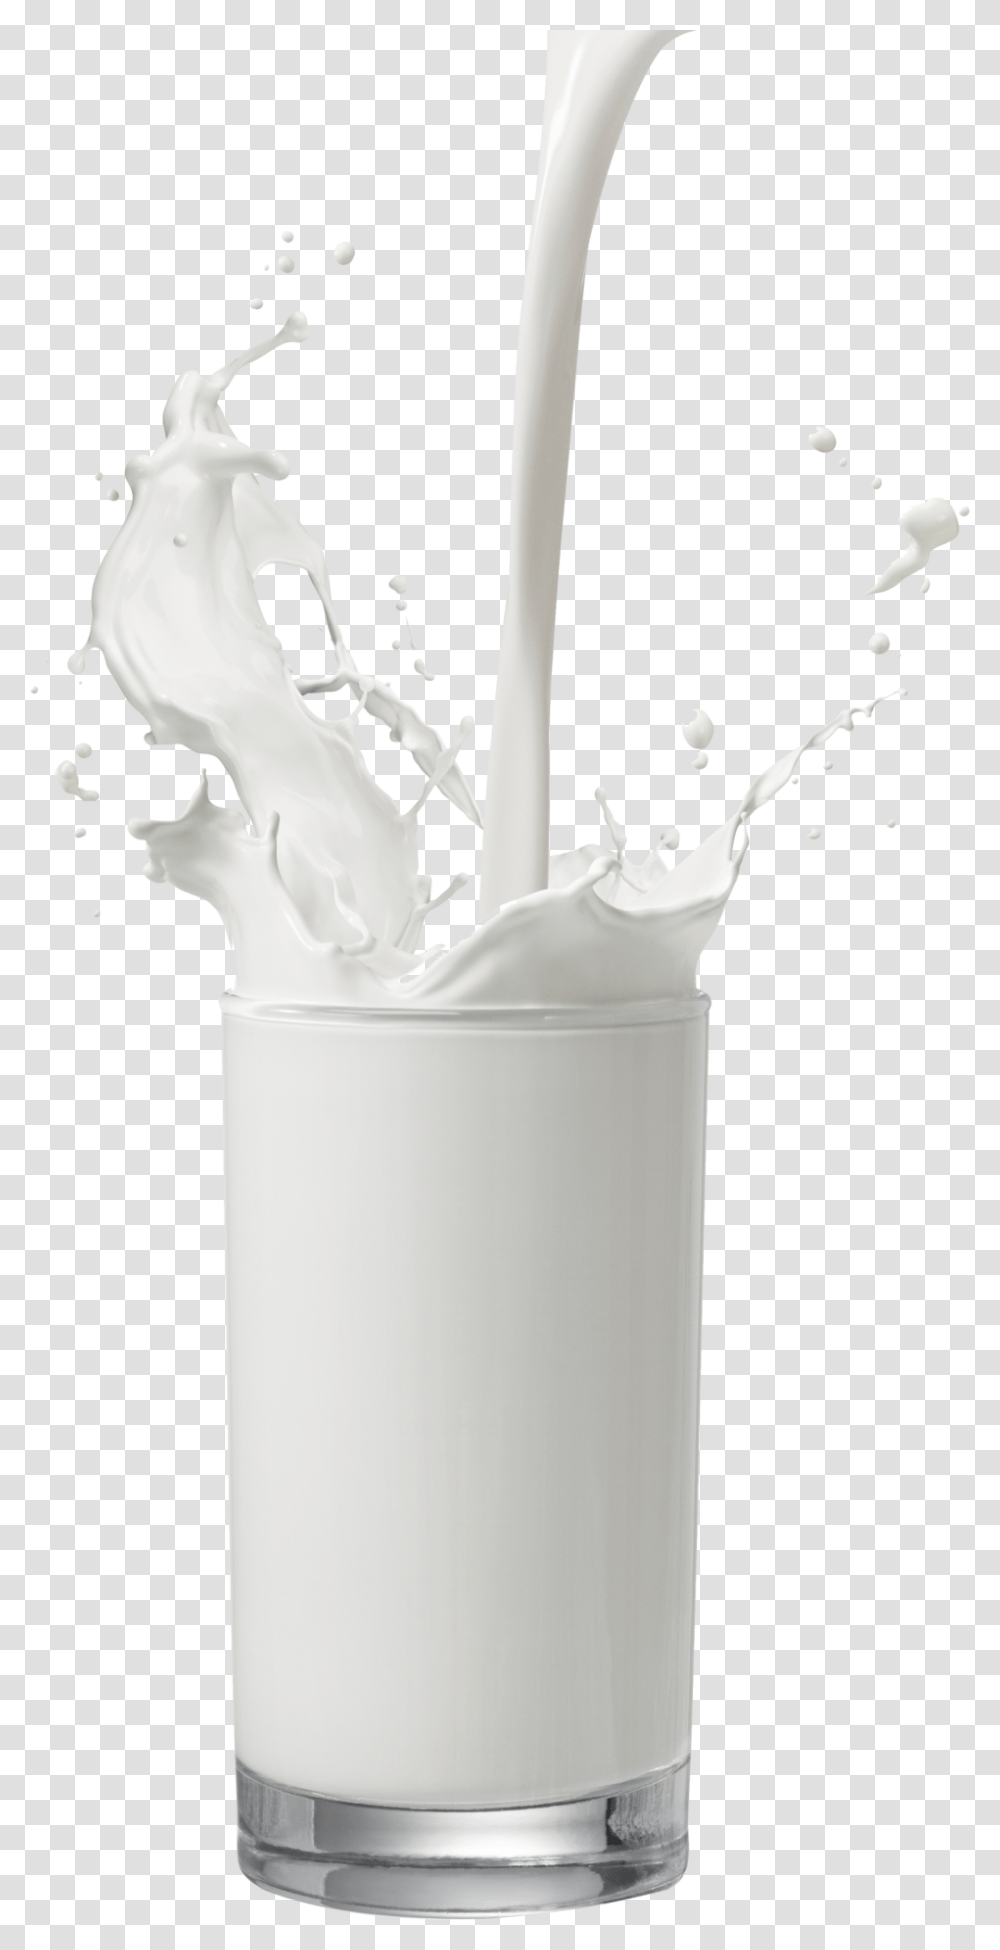 Milk Image Glass Of Milk, Beverage, Drink, Dairy, Shaker Transparent Png